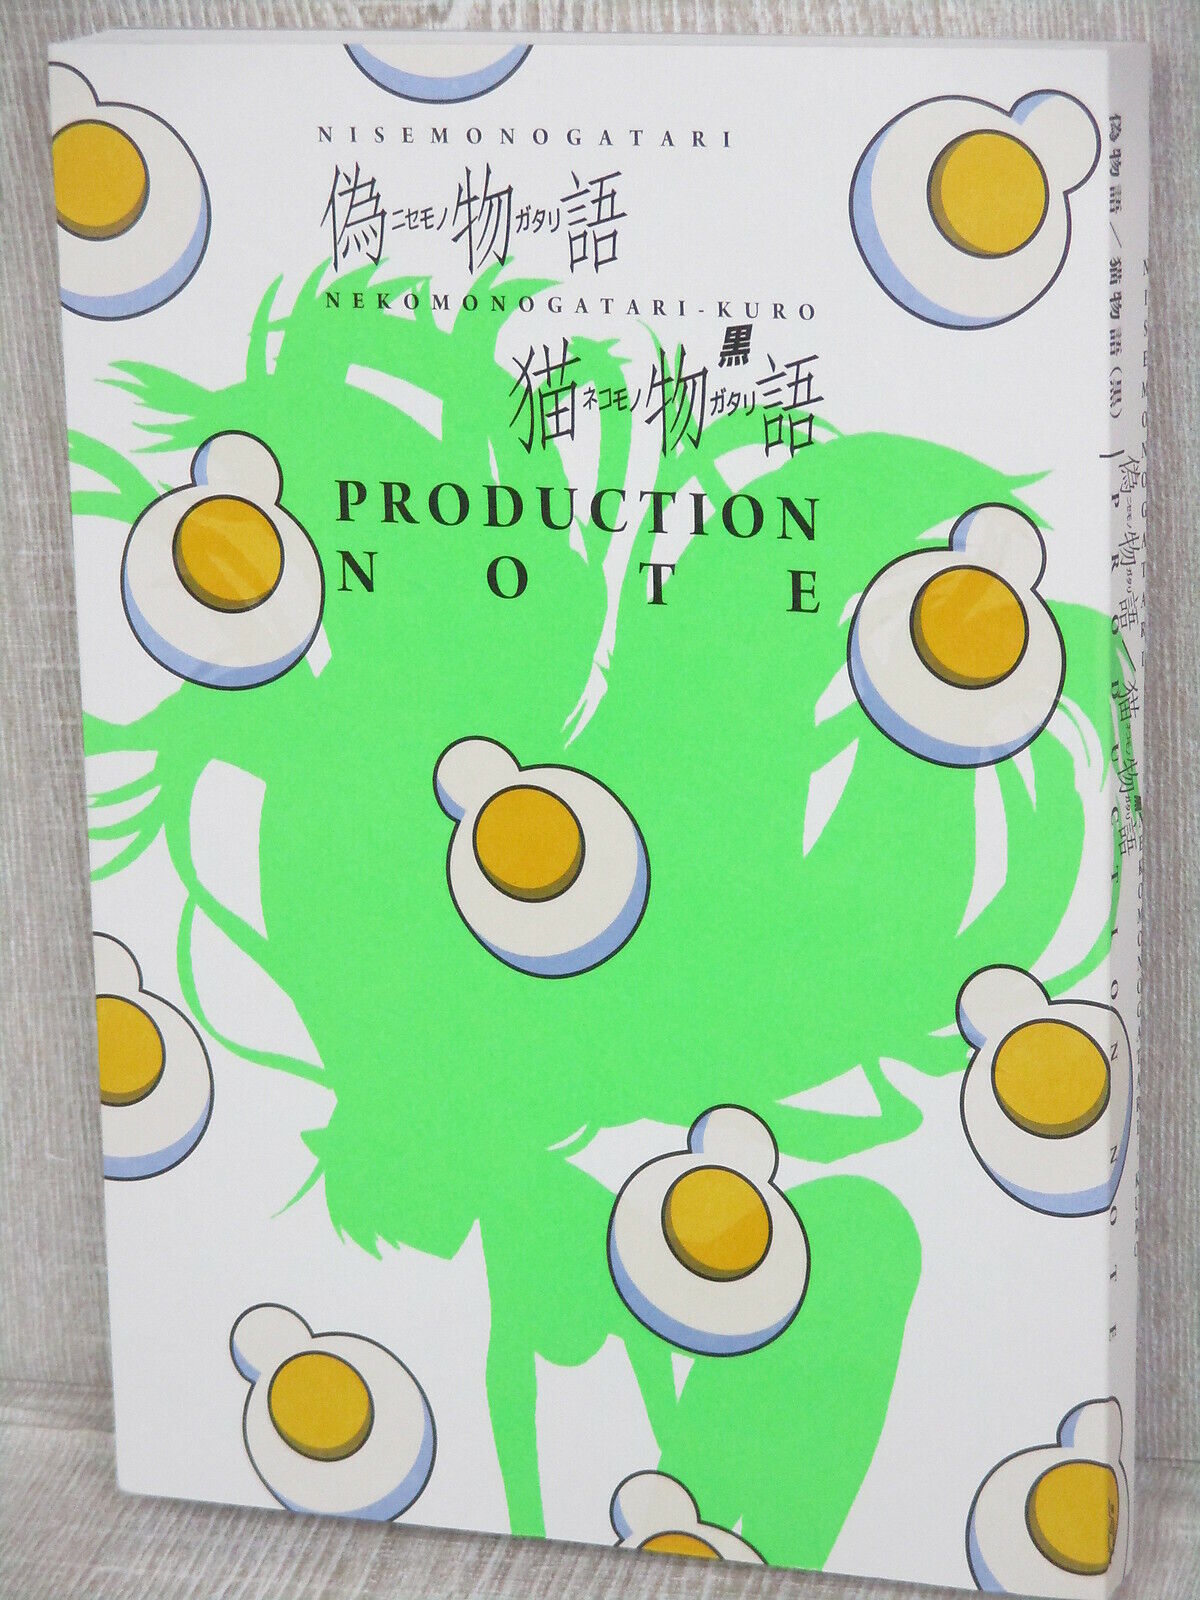 NISEMONOGATARI NEKOMONOGATARI Production Note KURO Art Design Book 2015 VOFAN